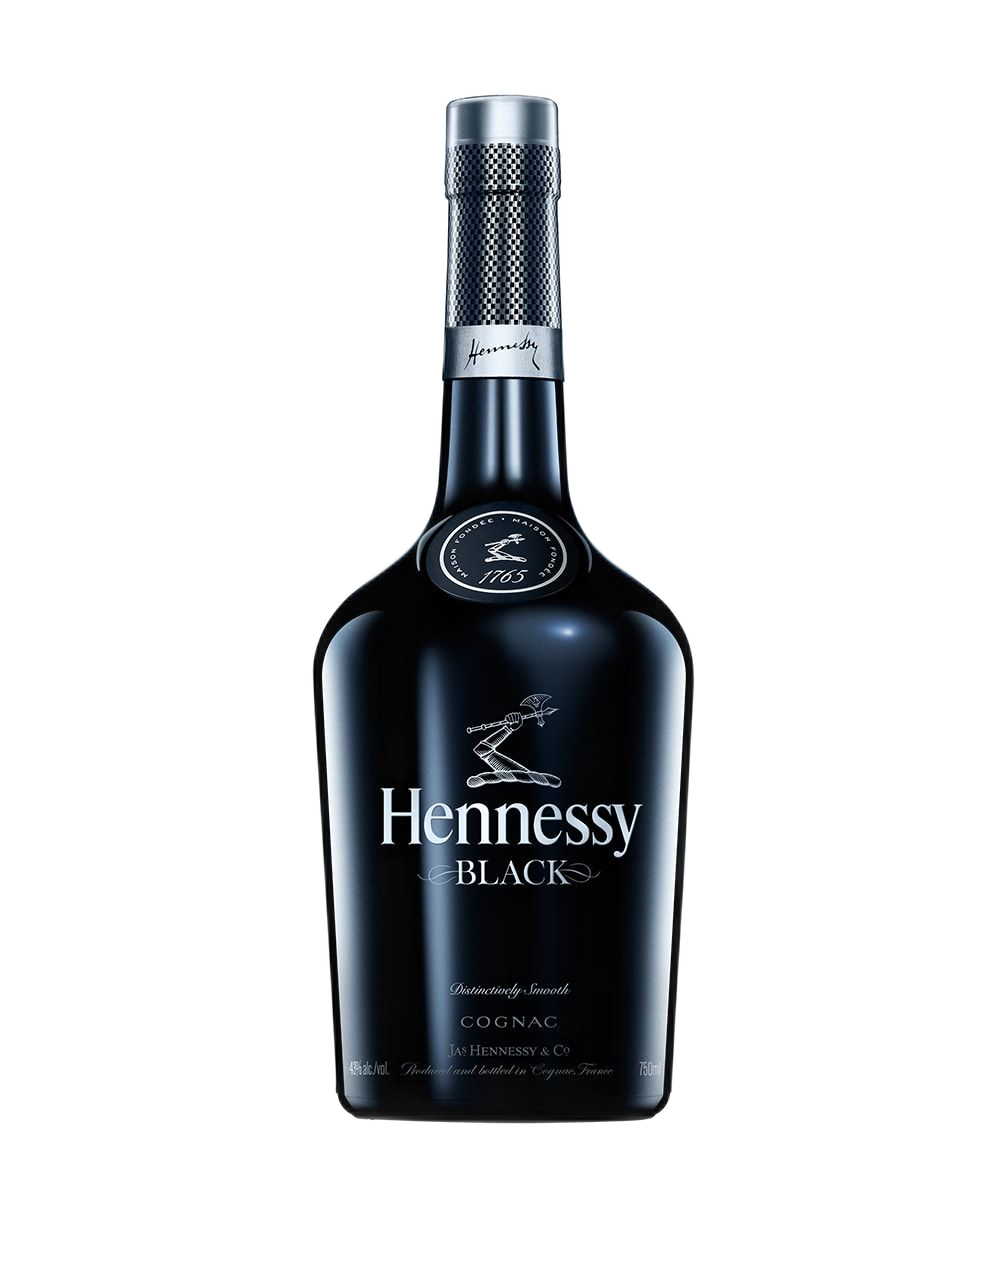 hennessy black bottle